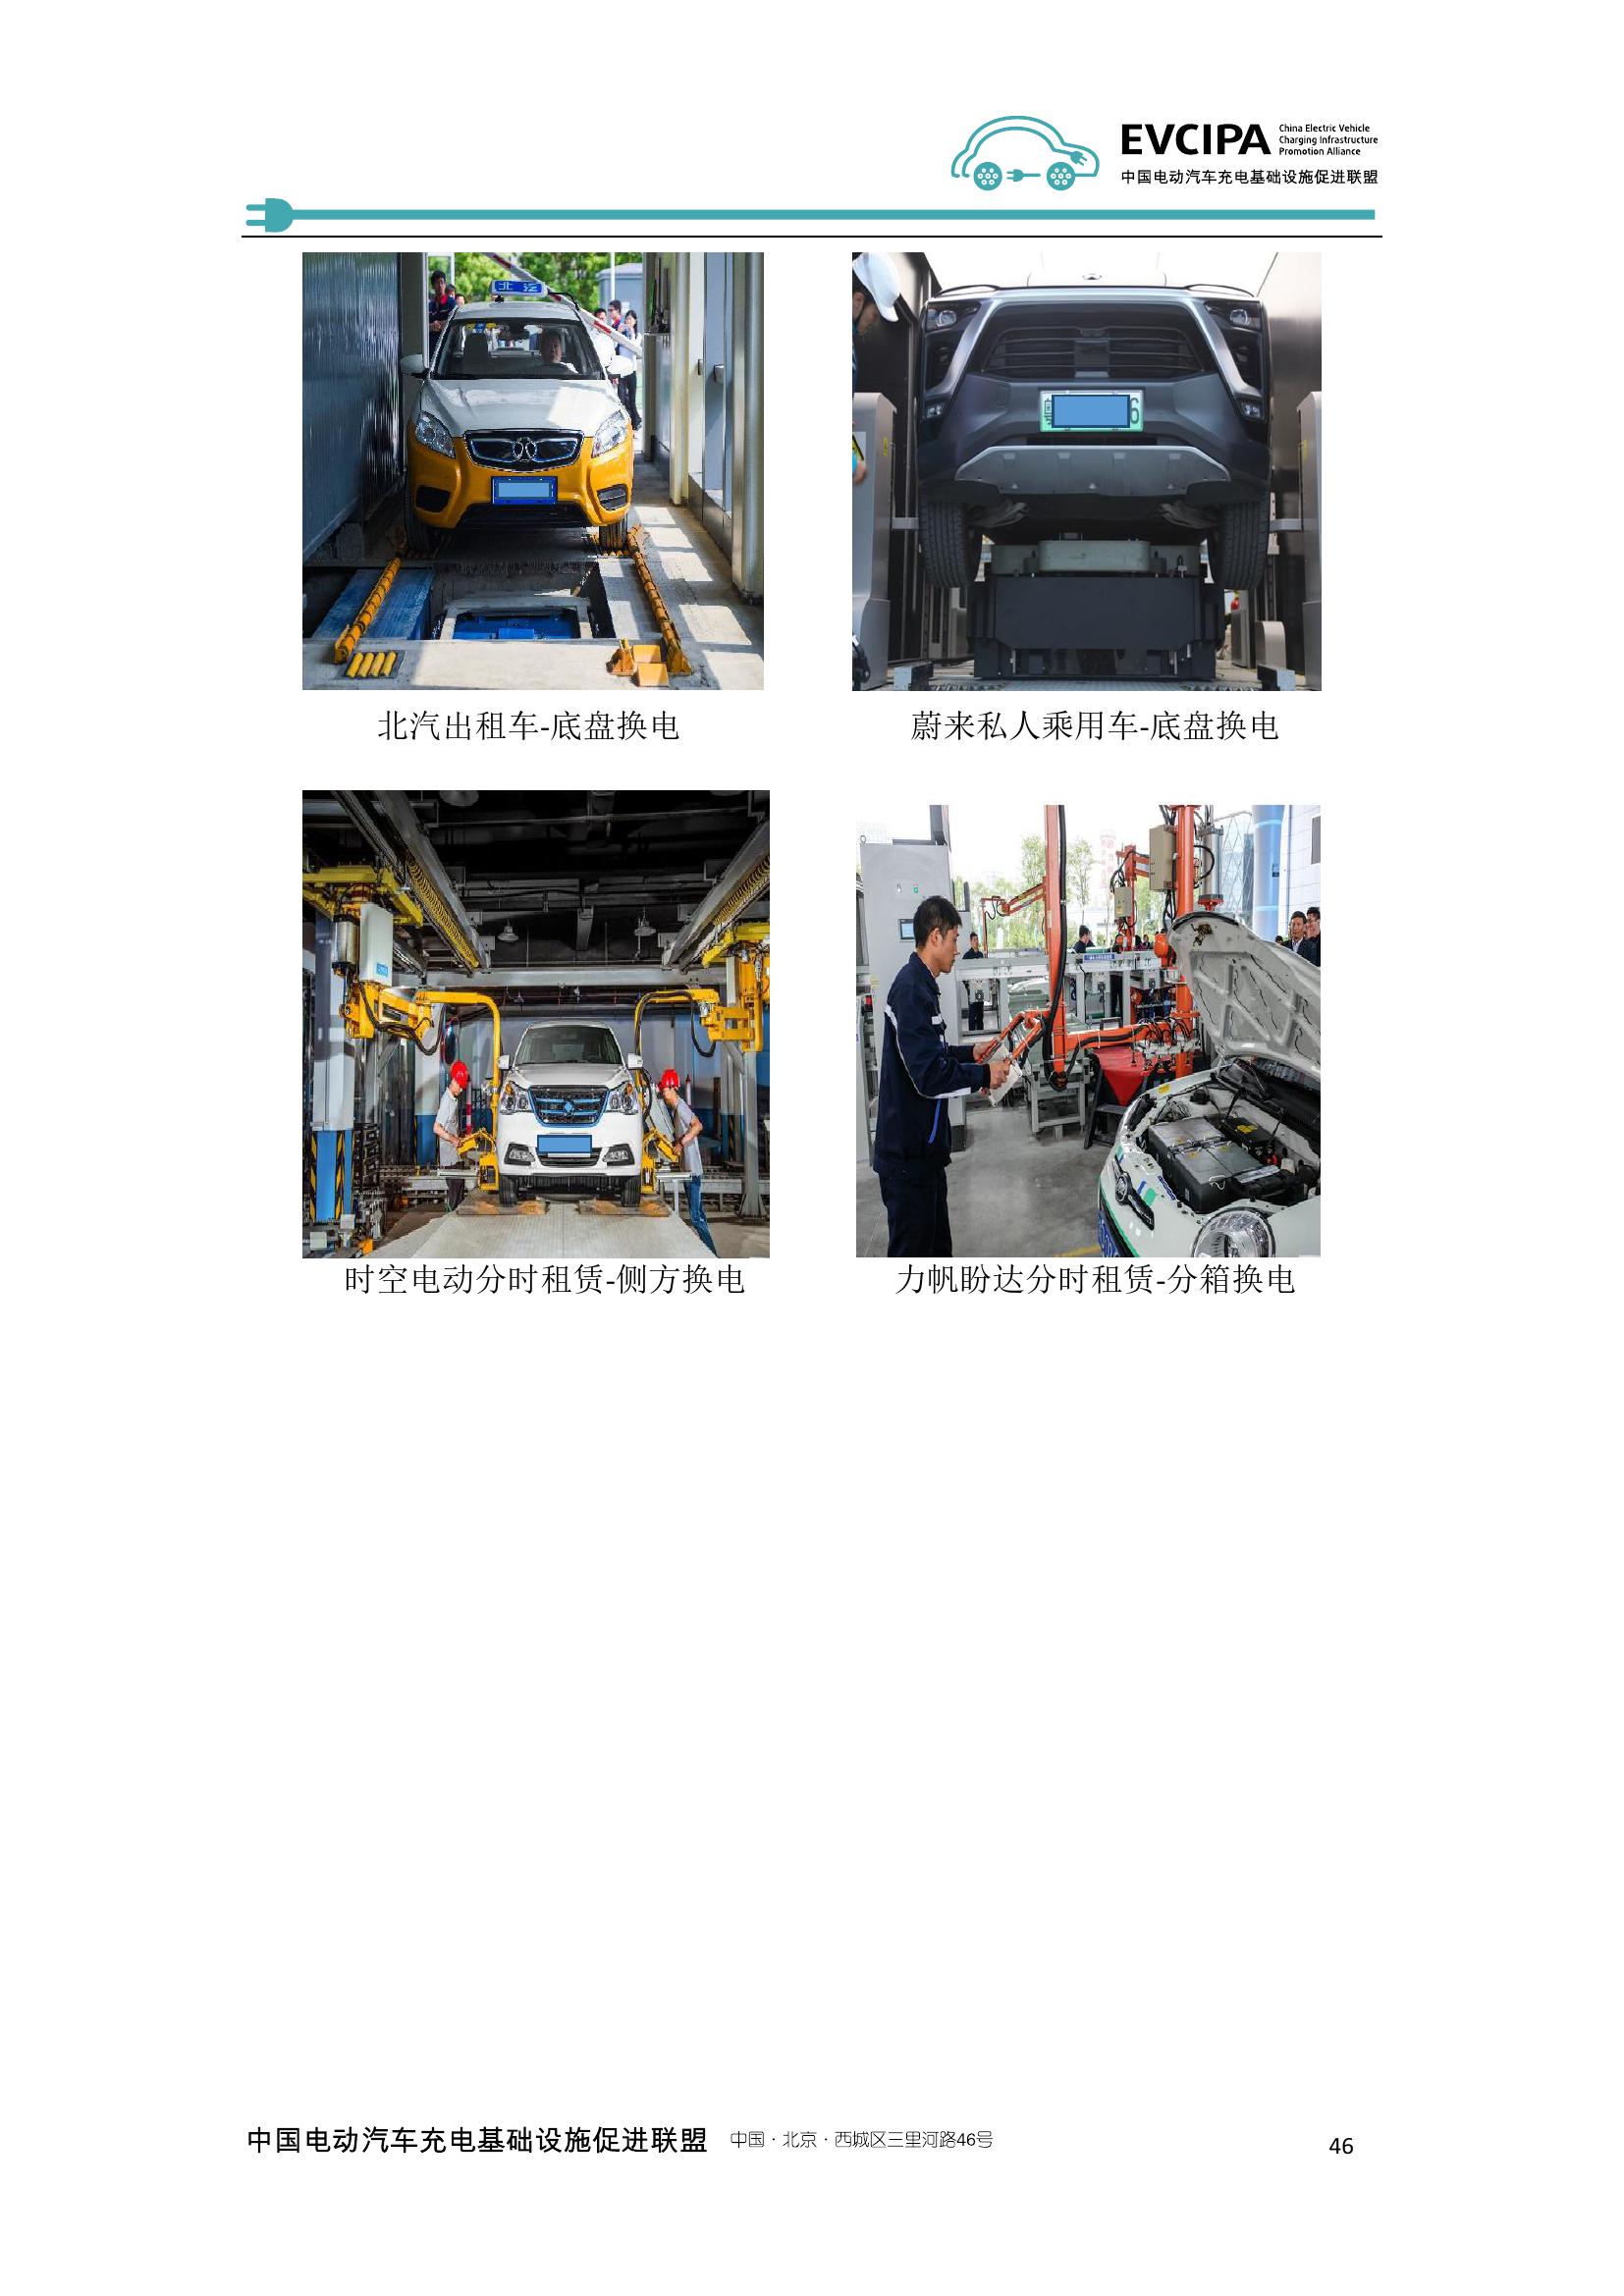 2019-2020年度中国充电基础设施发展报告_000054.jpg